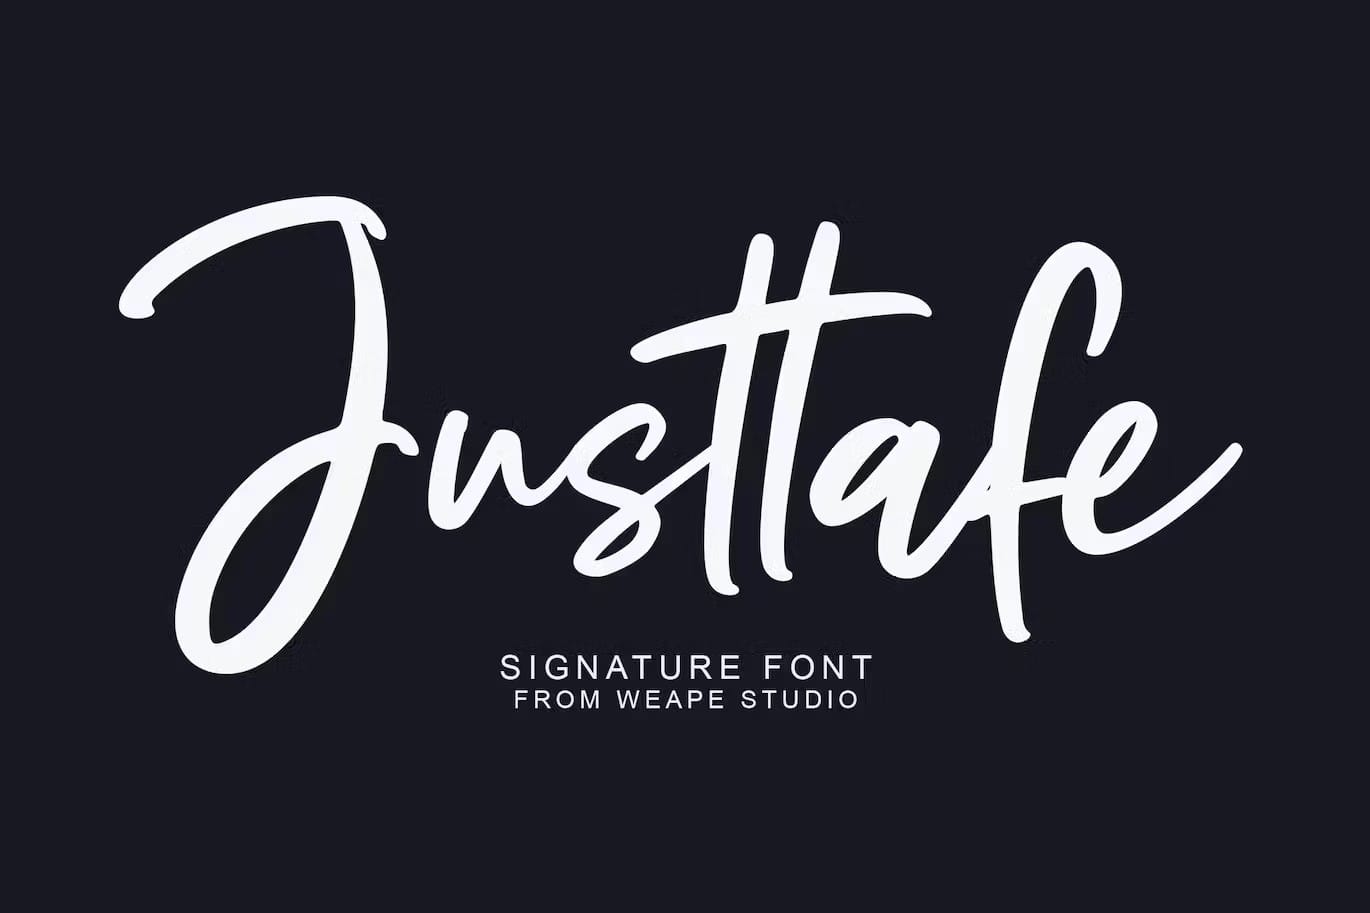 A bold signature font